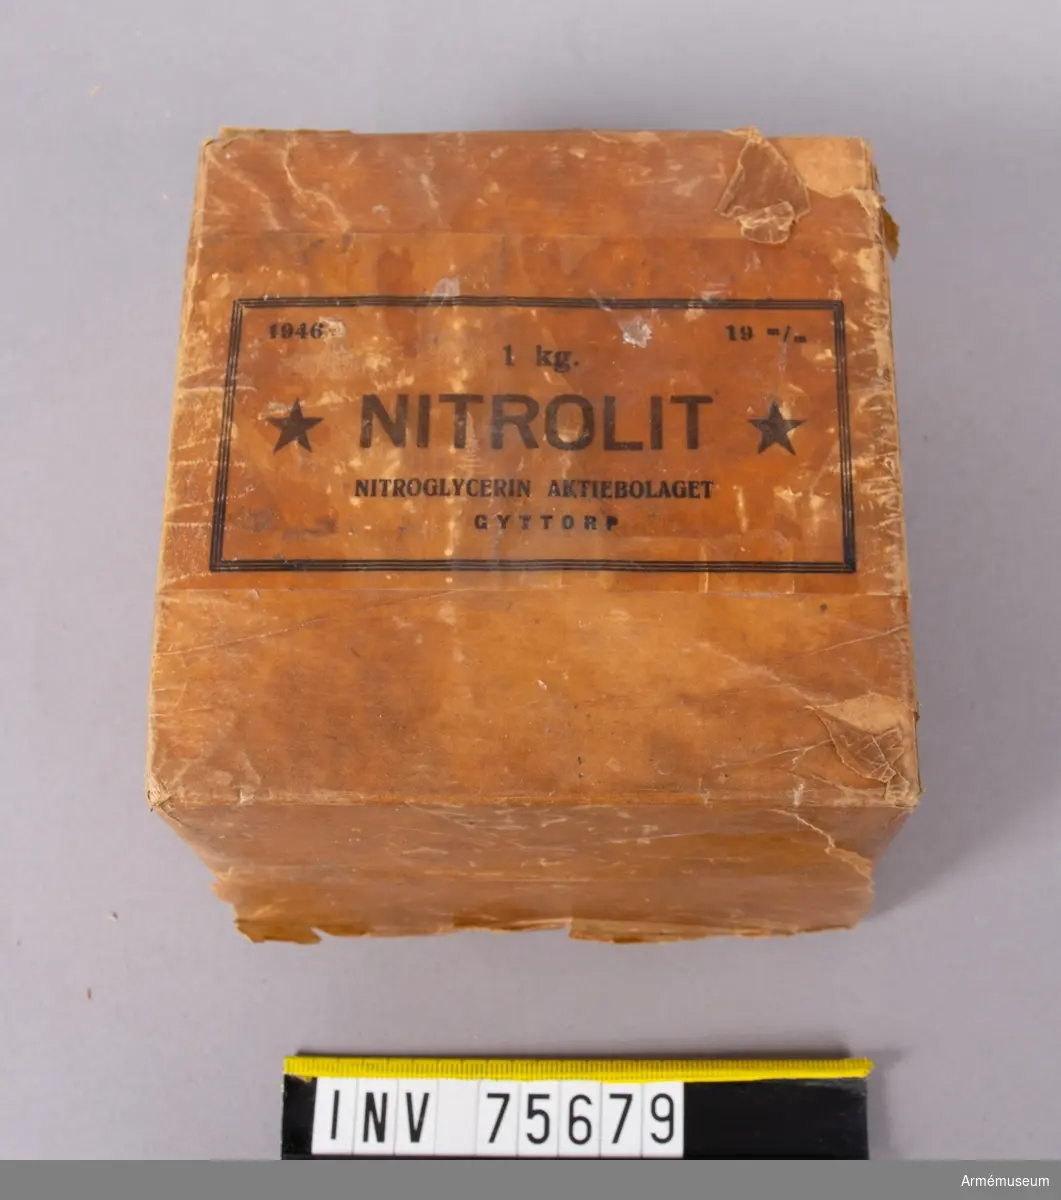 Grupp G III.
19 mm nitrolitpatroner.